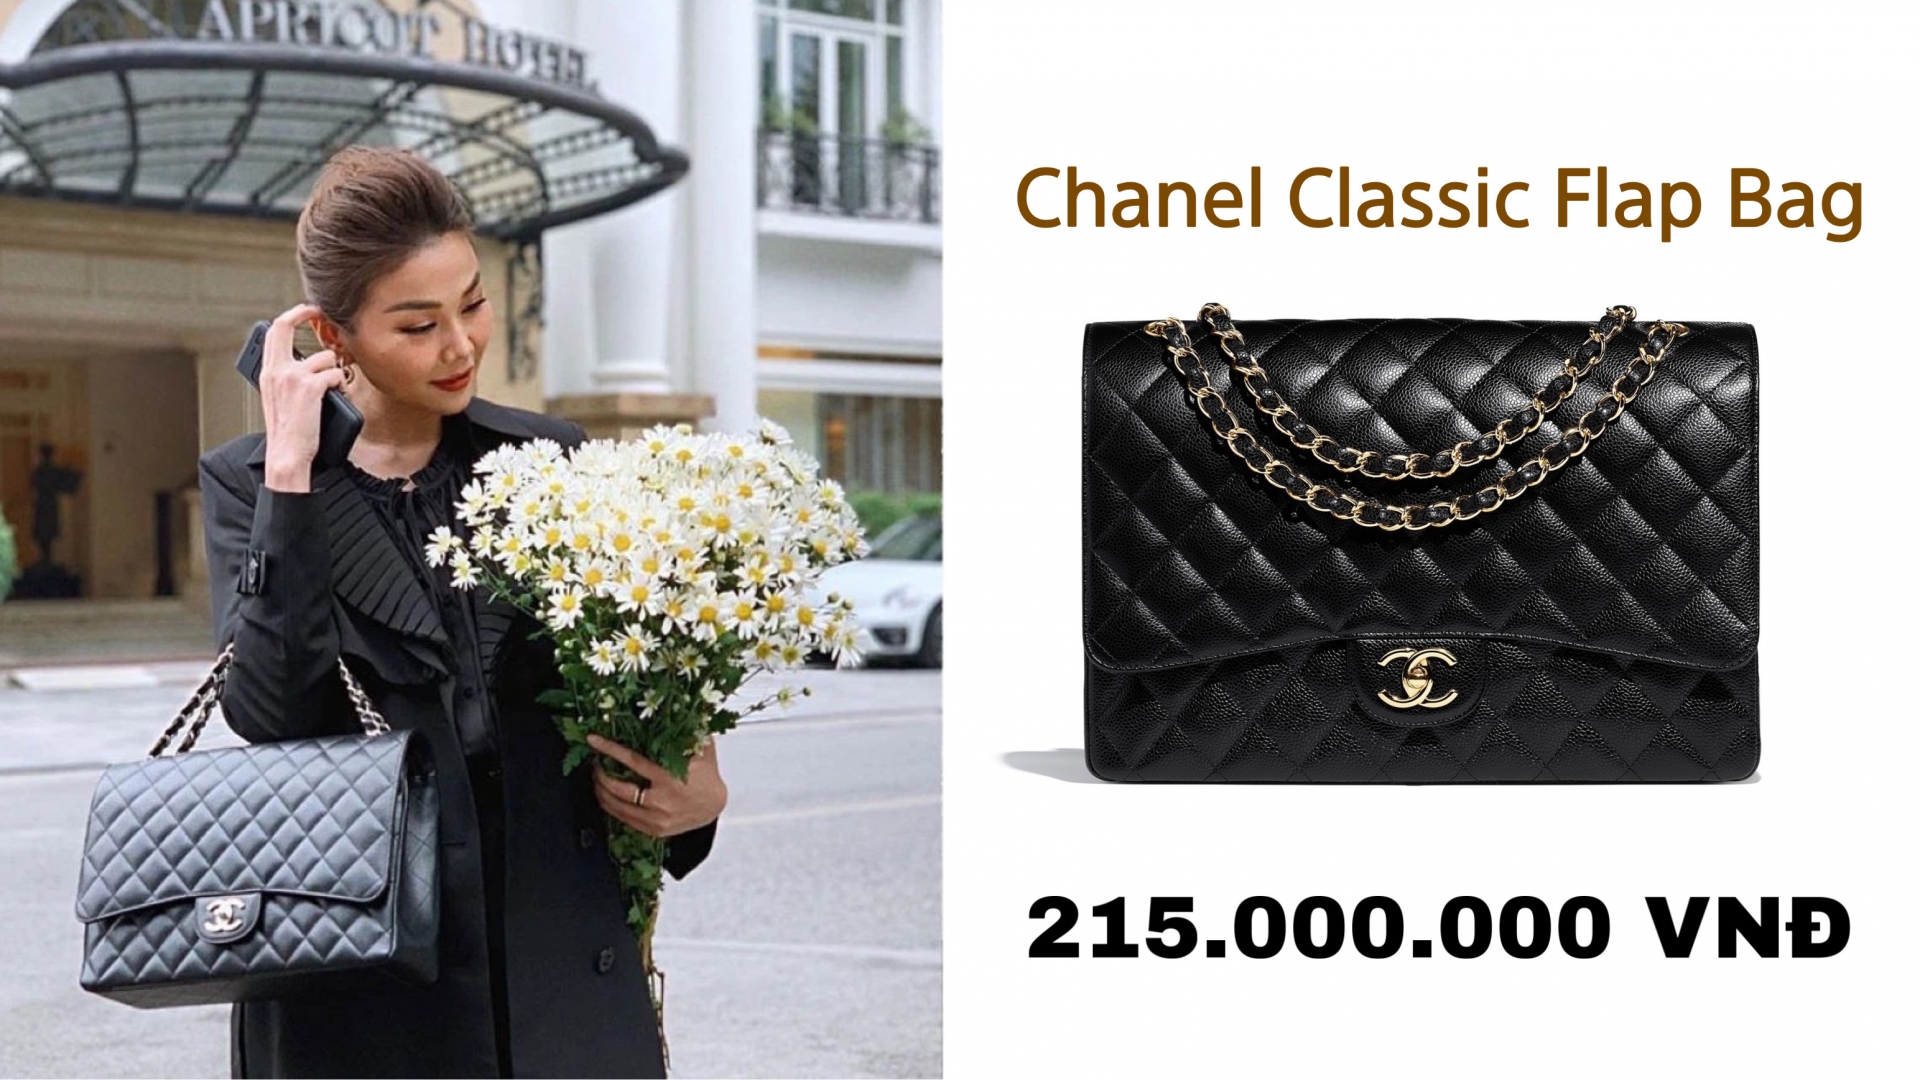 Mẫu túi xách này là một trong những dòng kinh điển của Chanel và có giá trị đầu tư cực cao. Khi bán lại trên thị trường có thể tăng giá gấp 2-3 lần so với giá trị ban đầu.